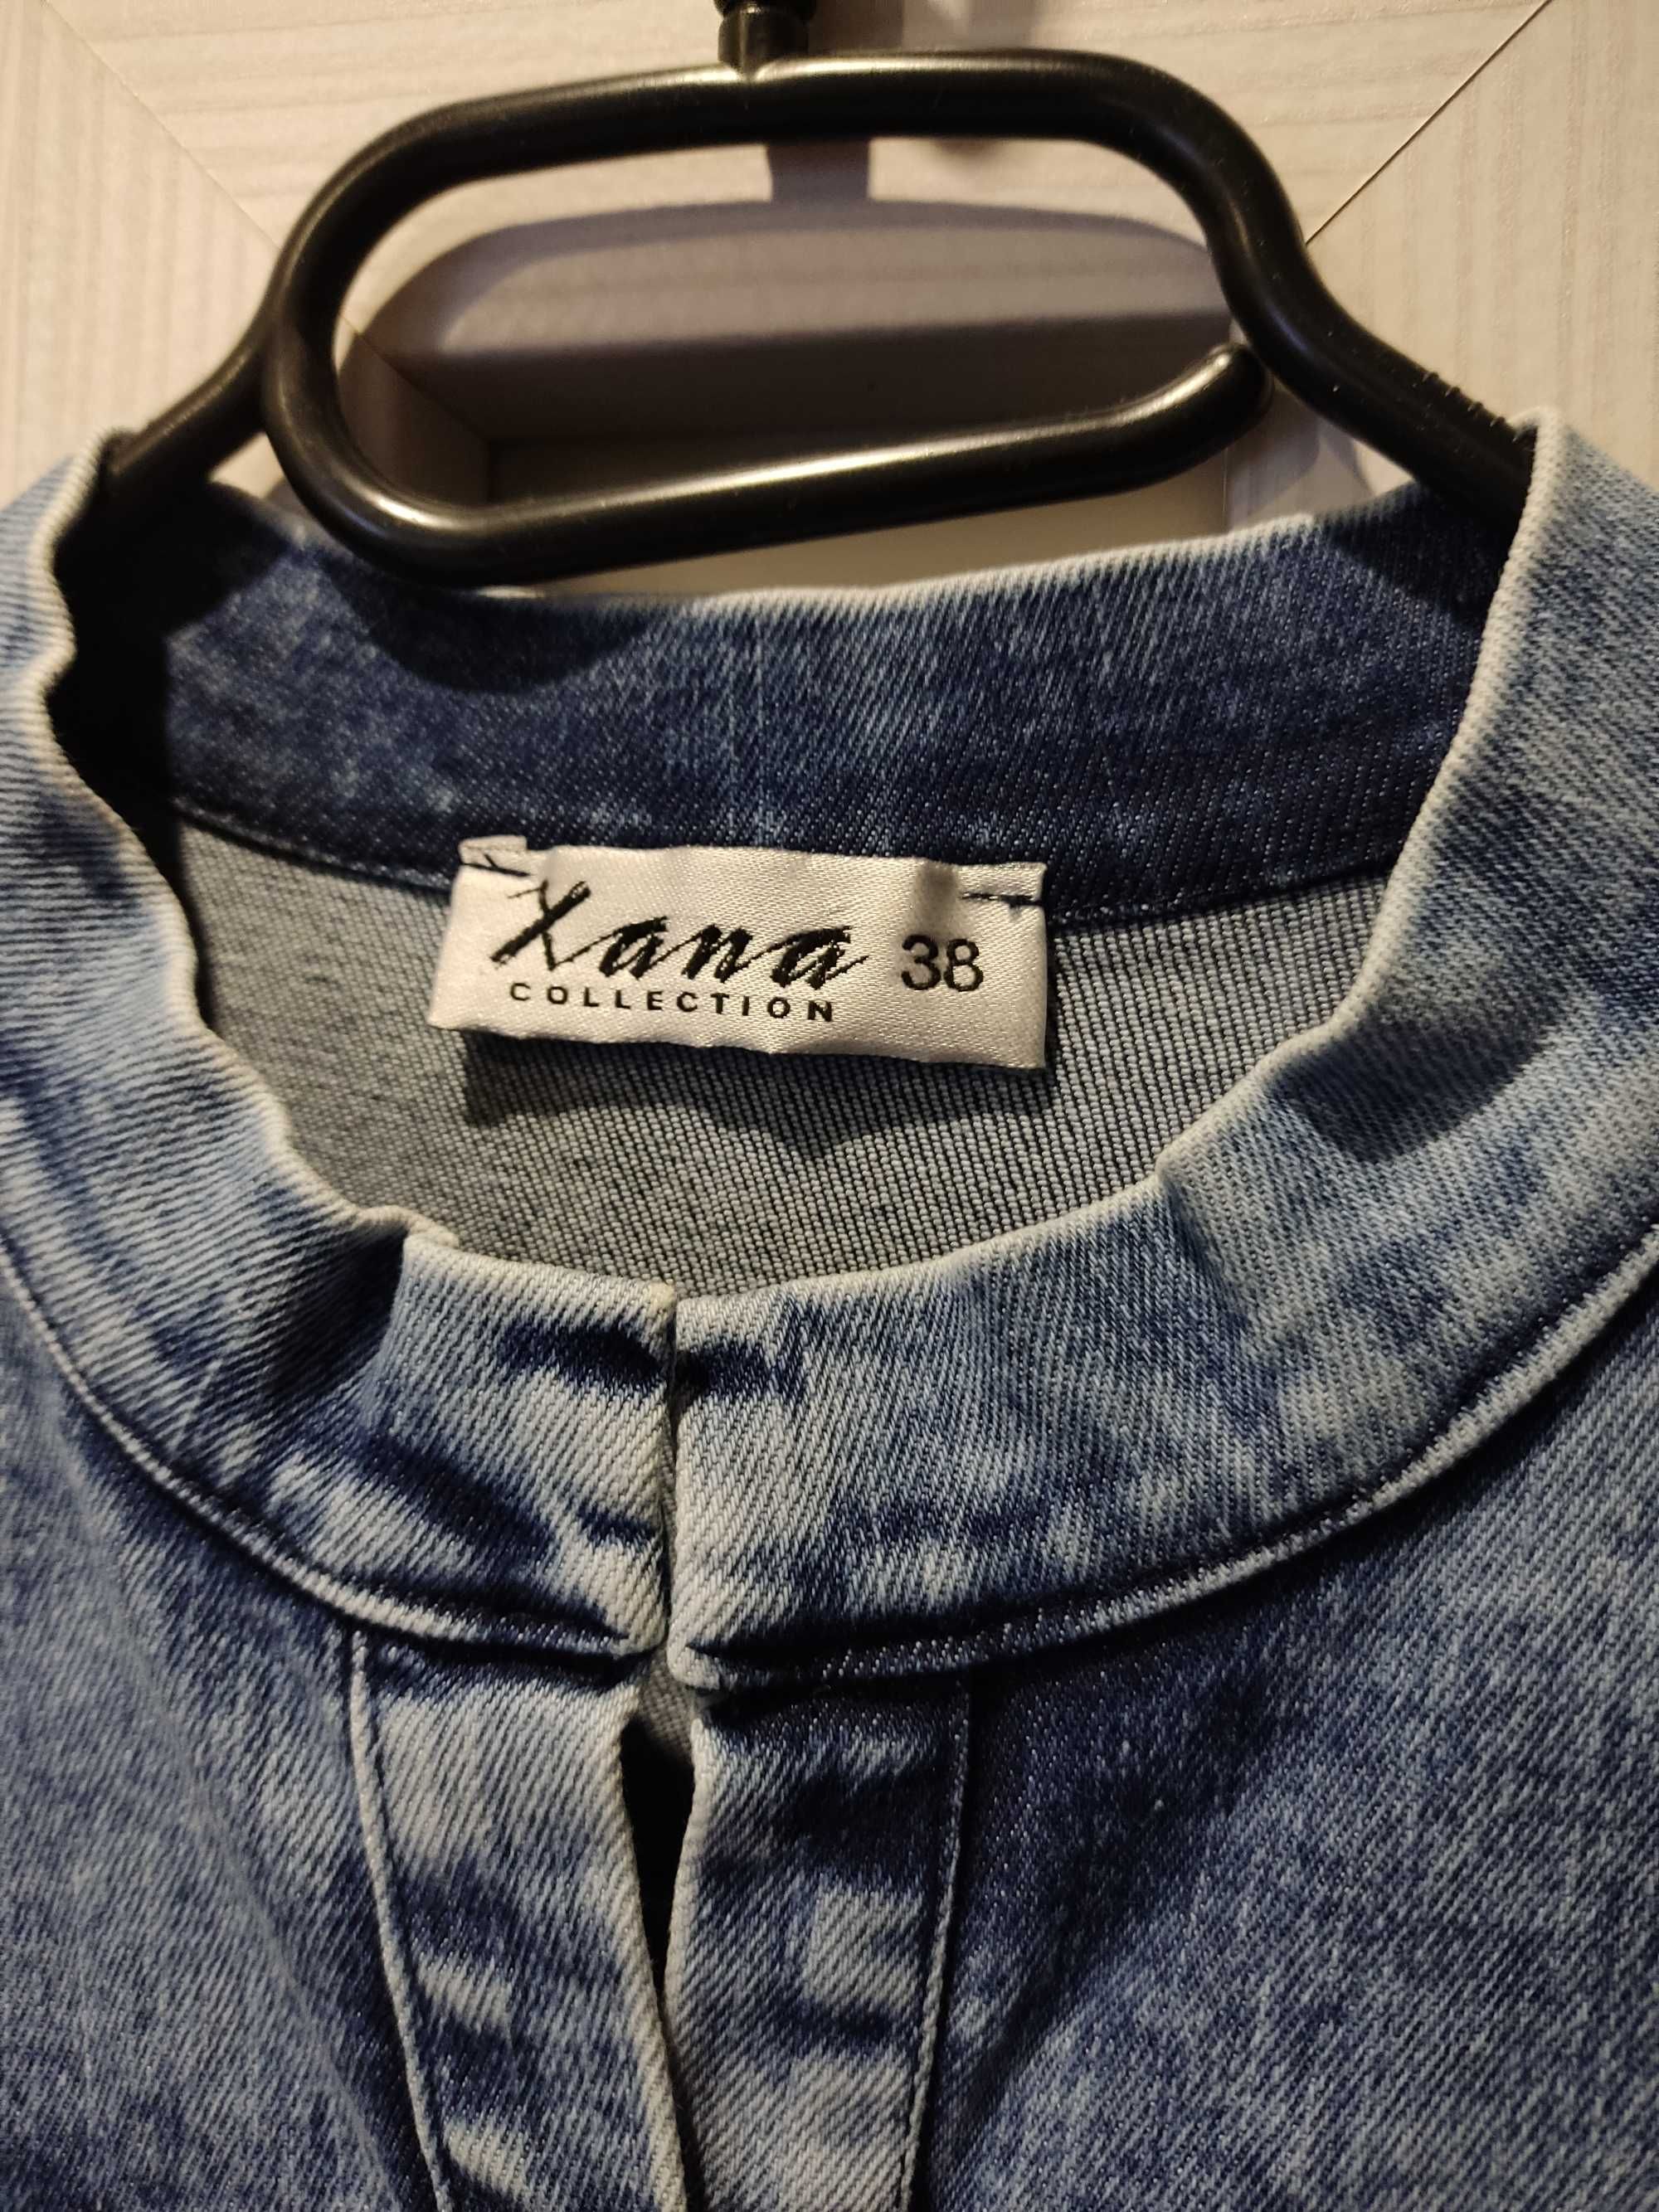 Koszula jeans firmy xana